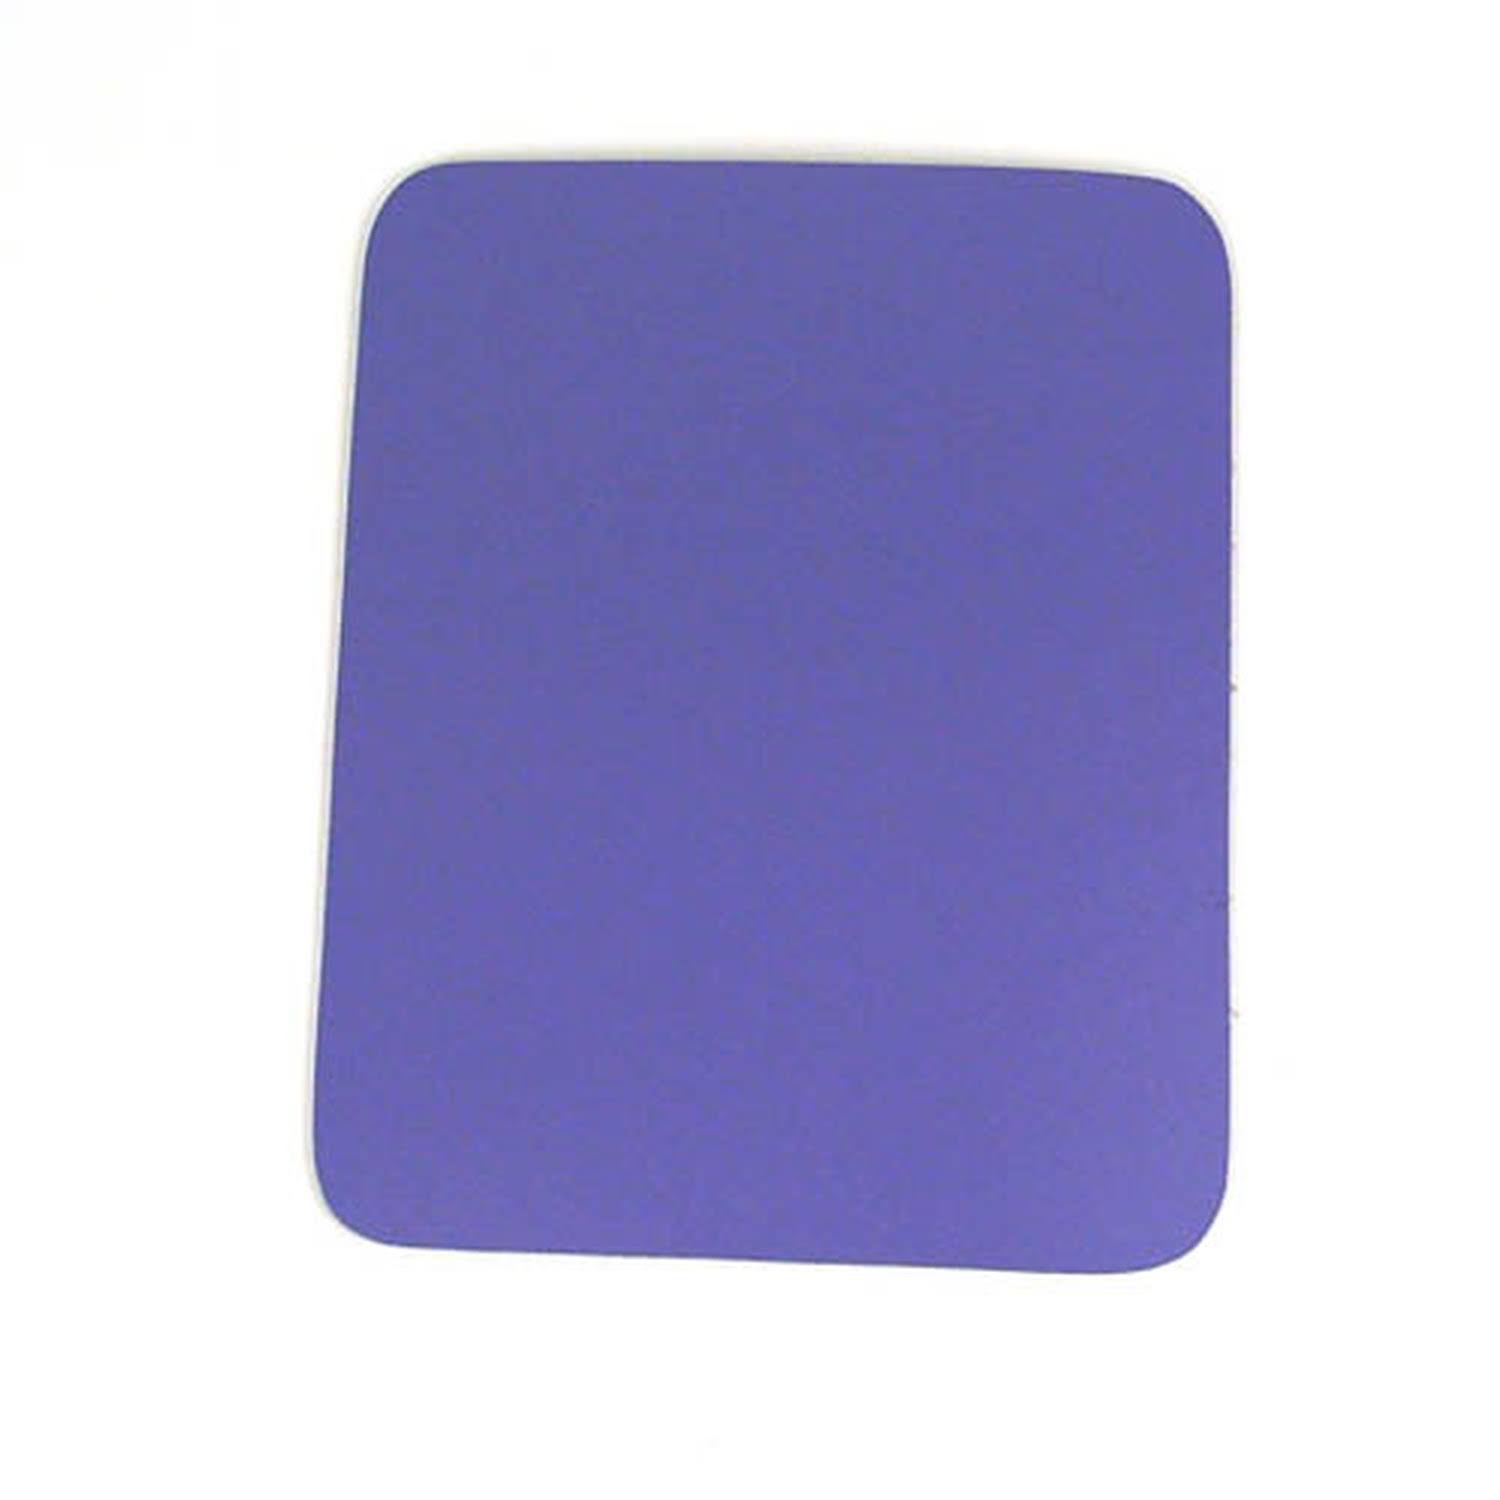 Belkin Premium Mouse Pad - Blue, 7.9''x9.9''